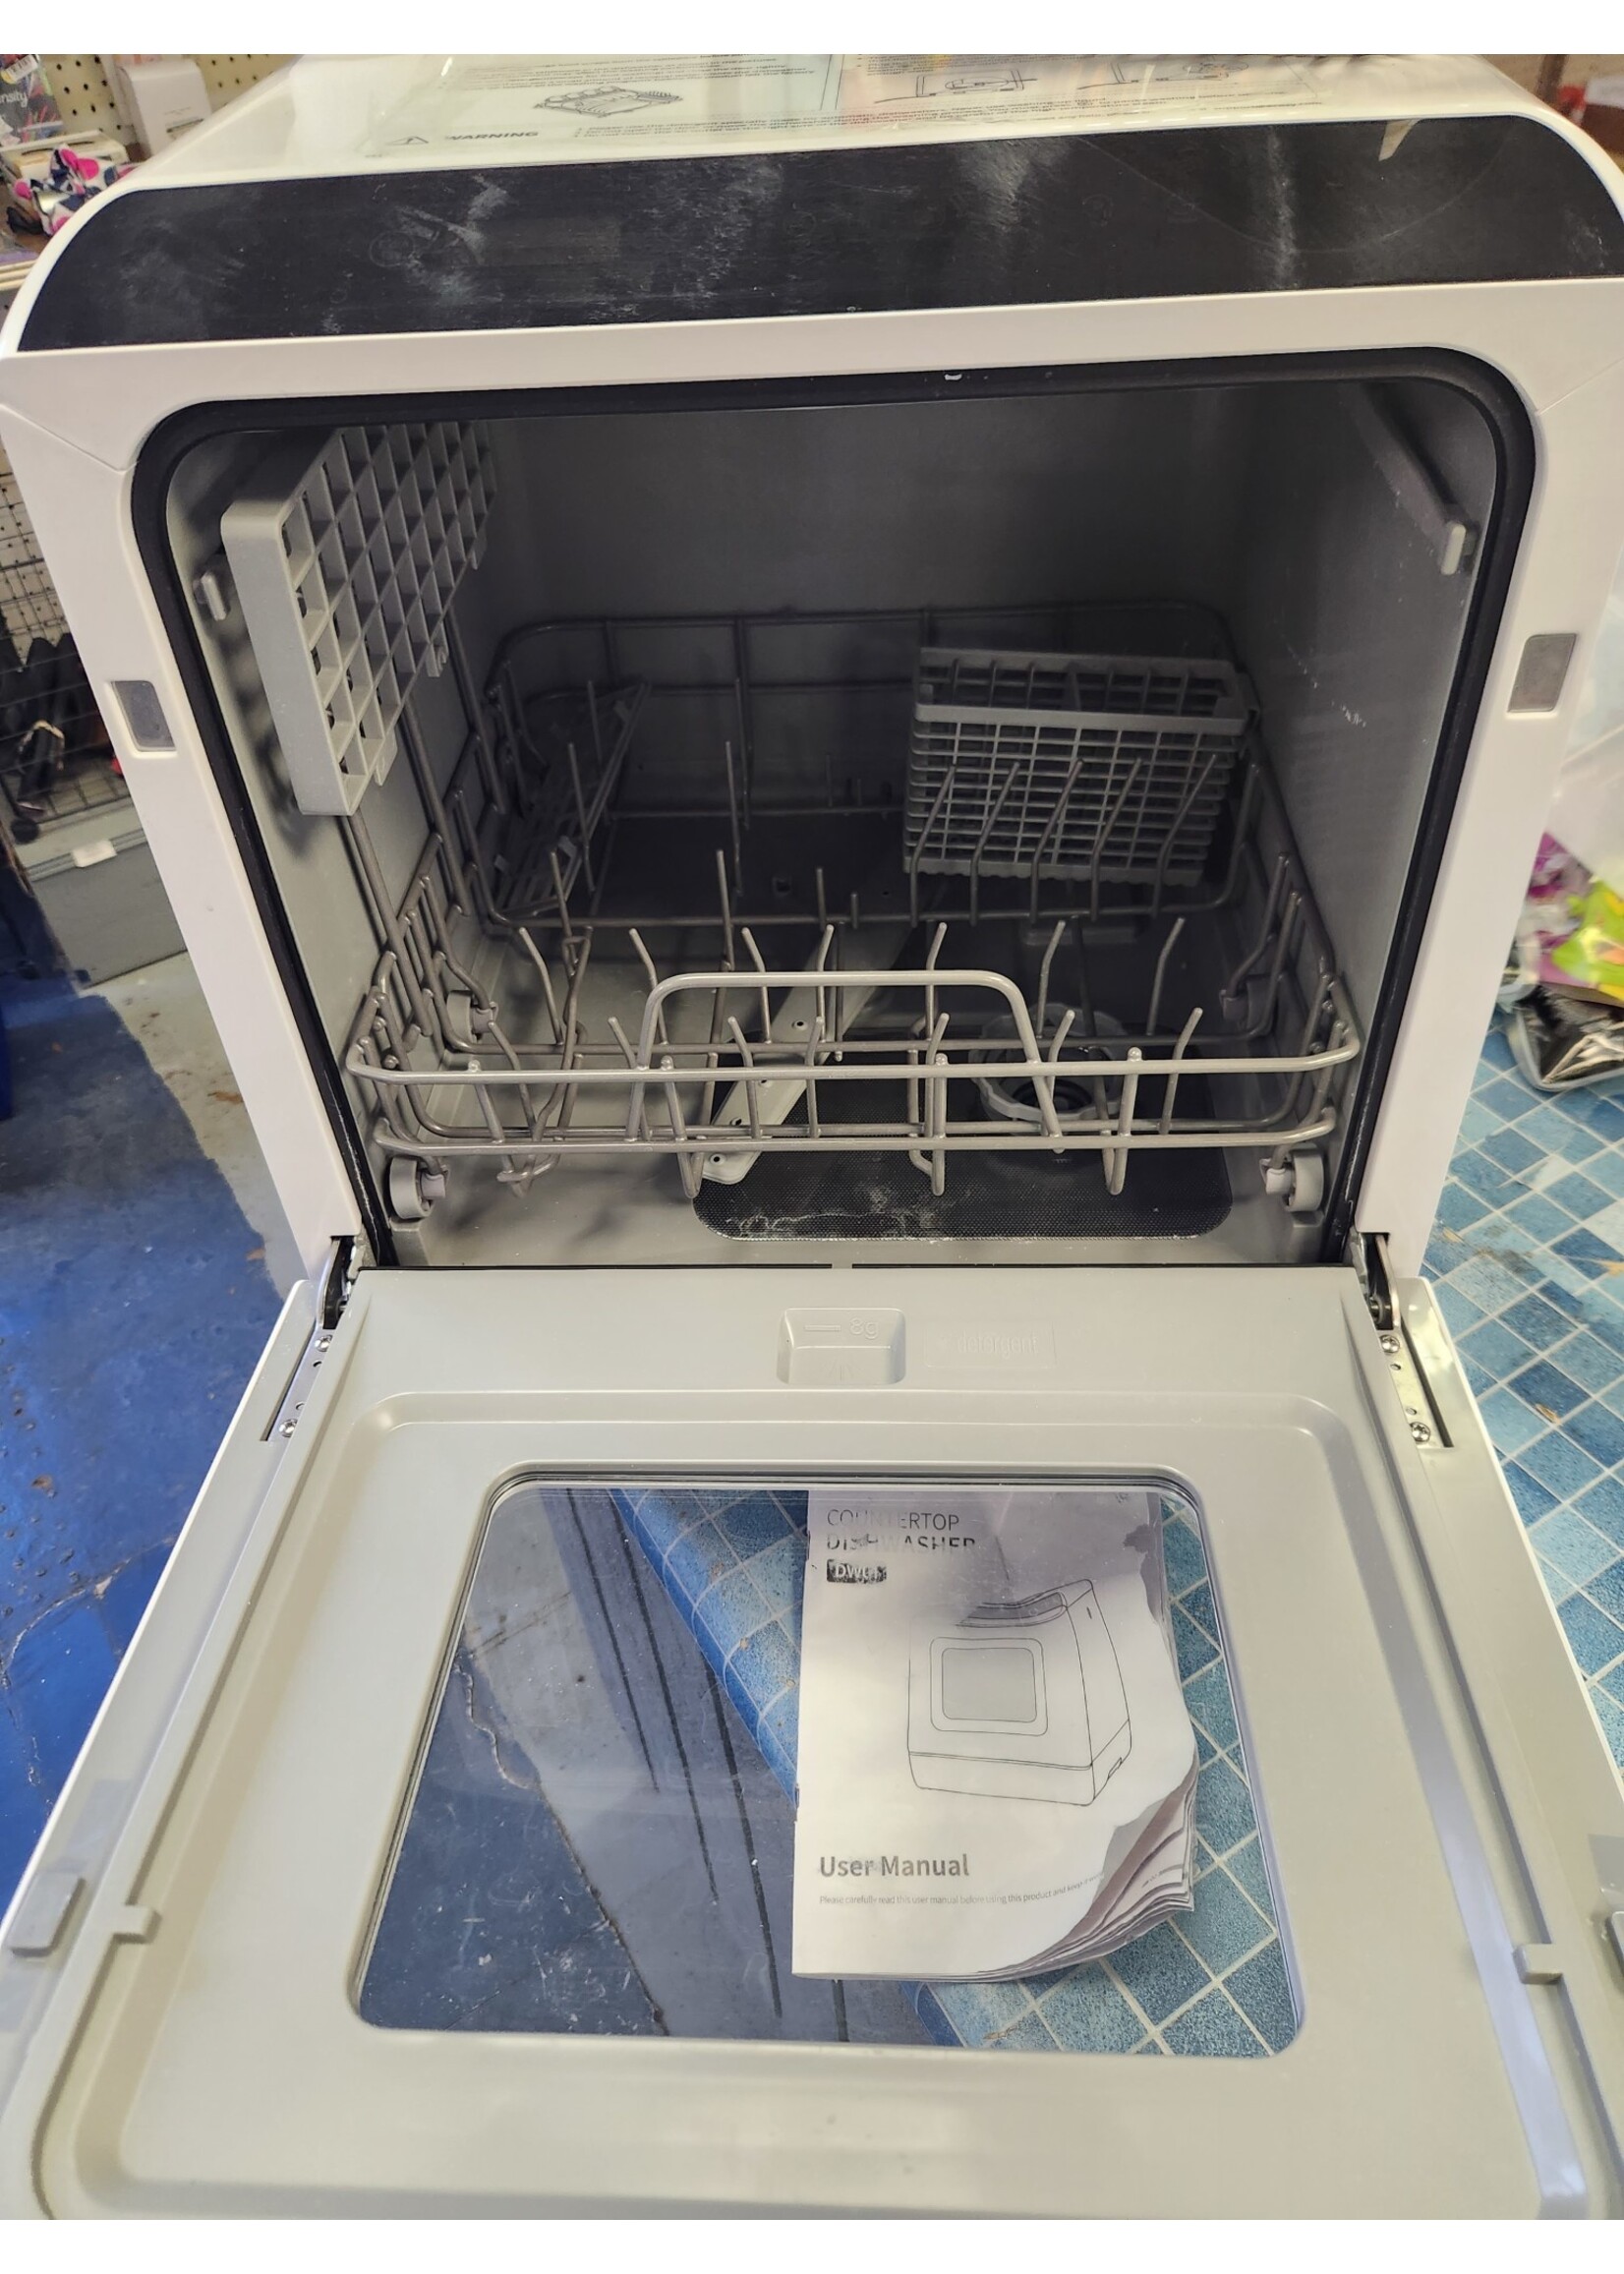 Ecozy DW01 Portable Countertop Dishwasher White New Sealed